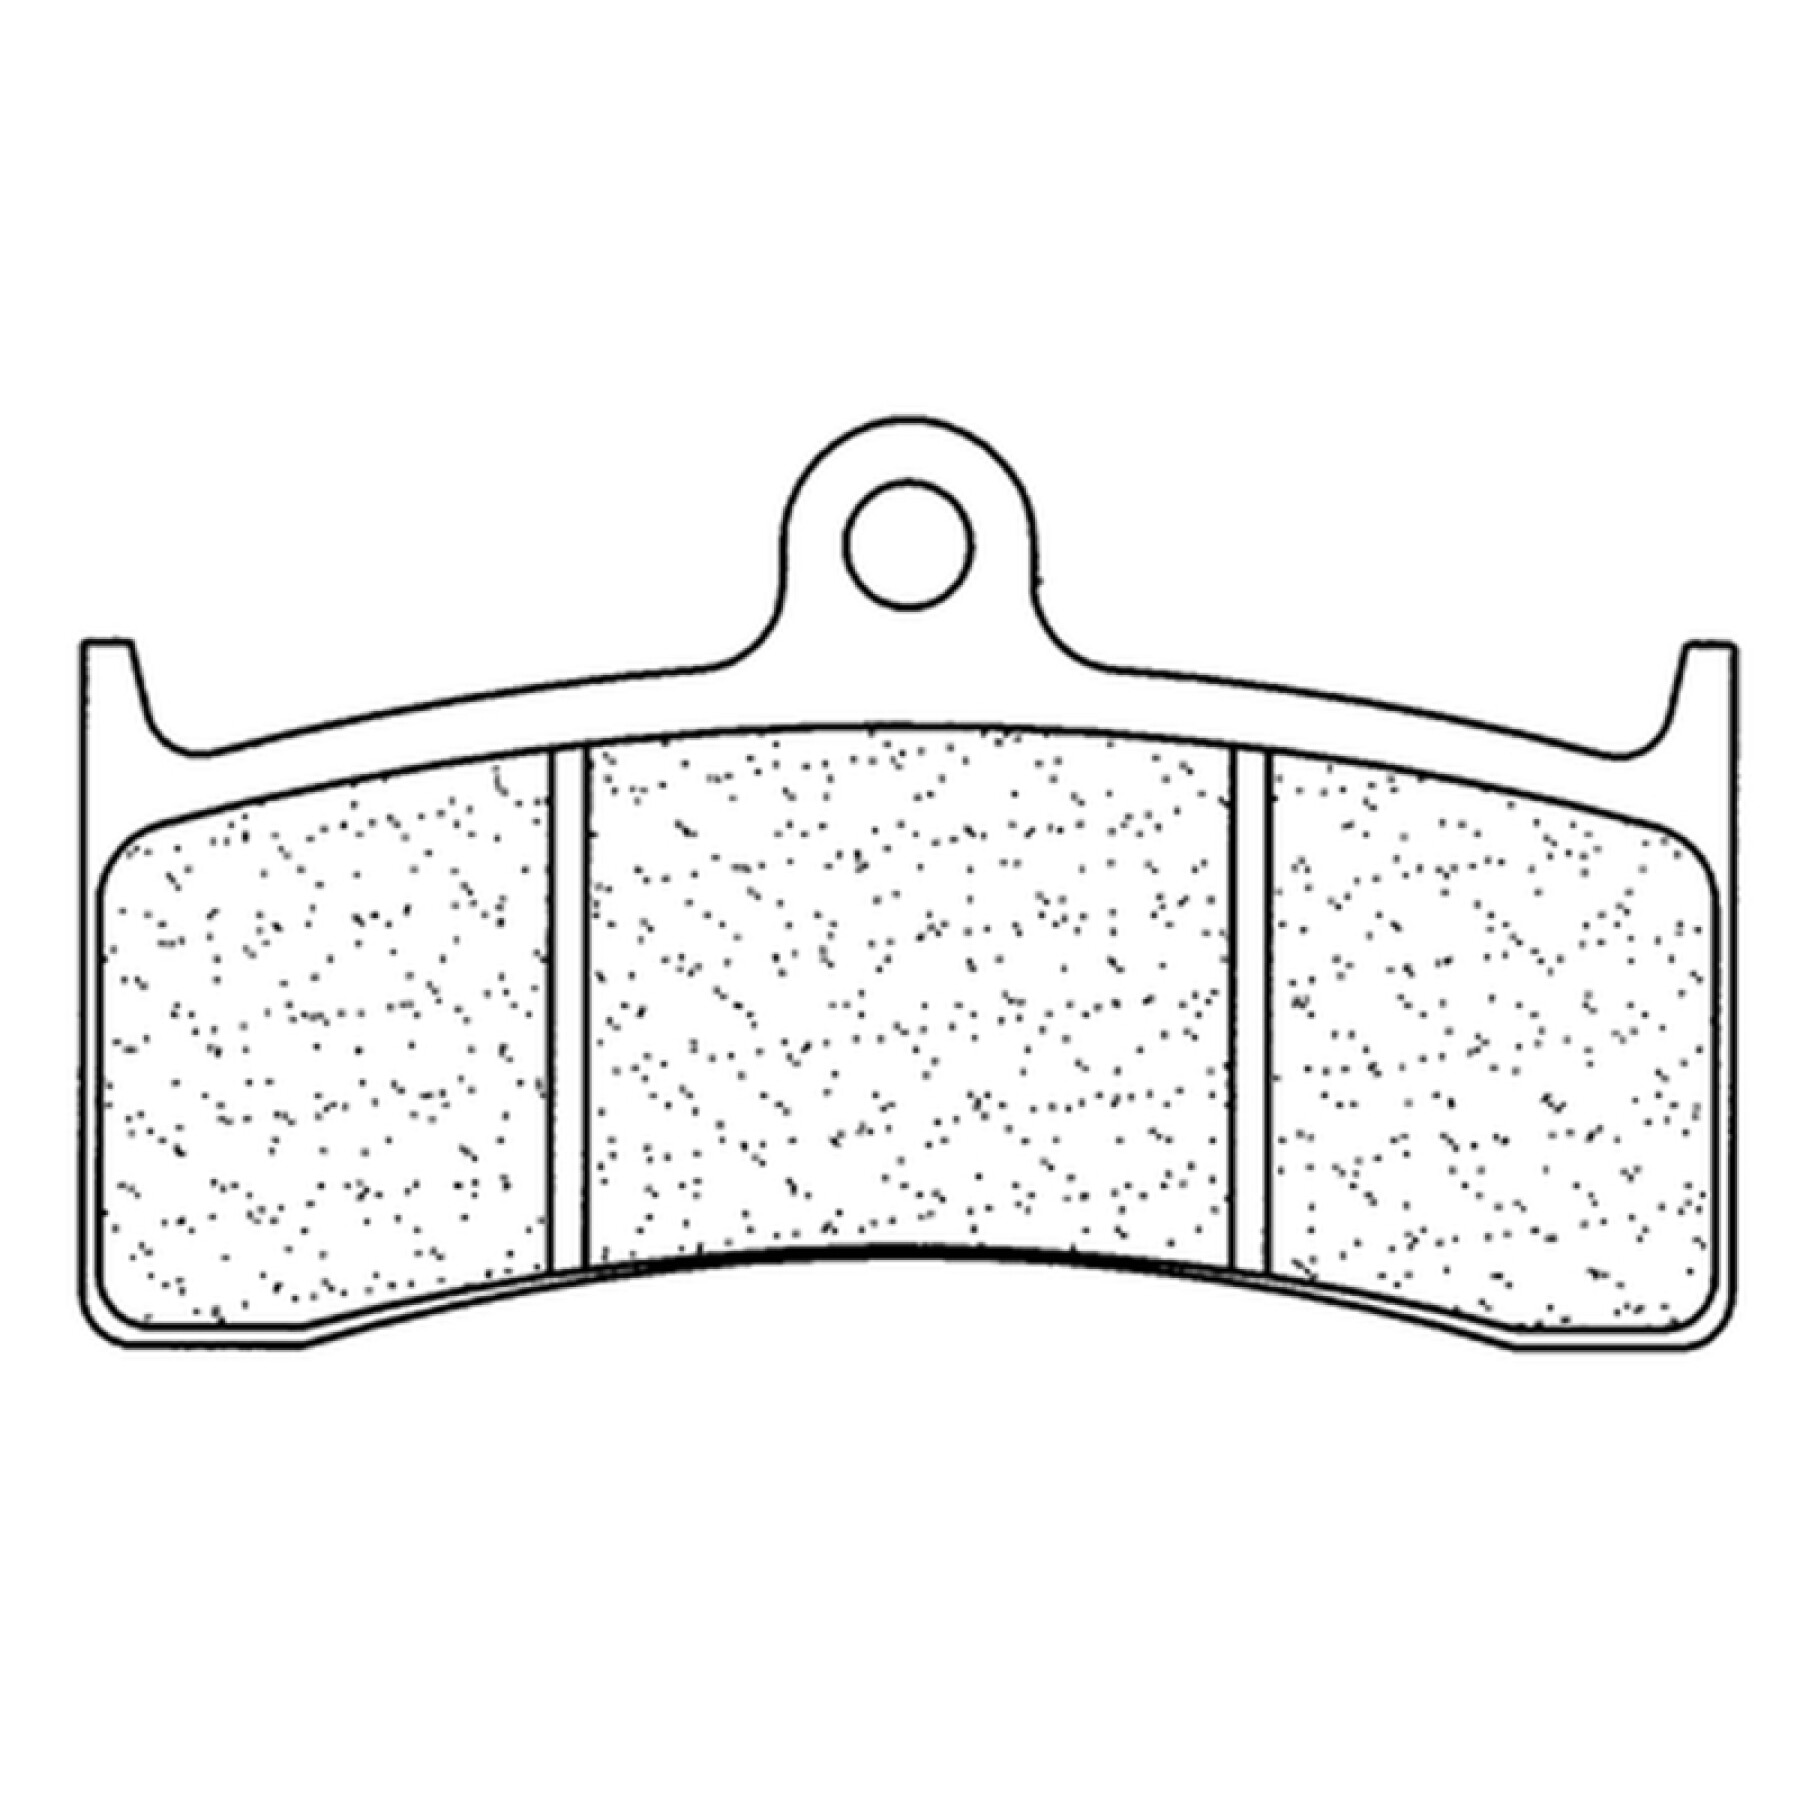 Pastilla de freno de metal sinterizado CL Brakes Racing - 2899C60